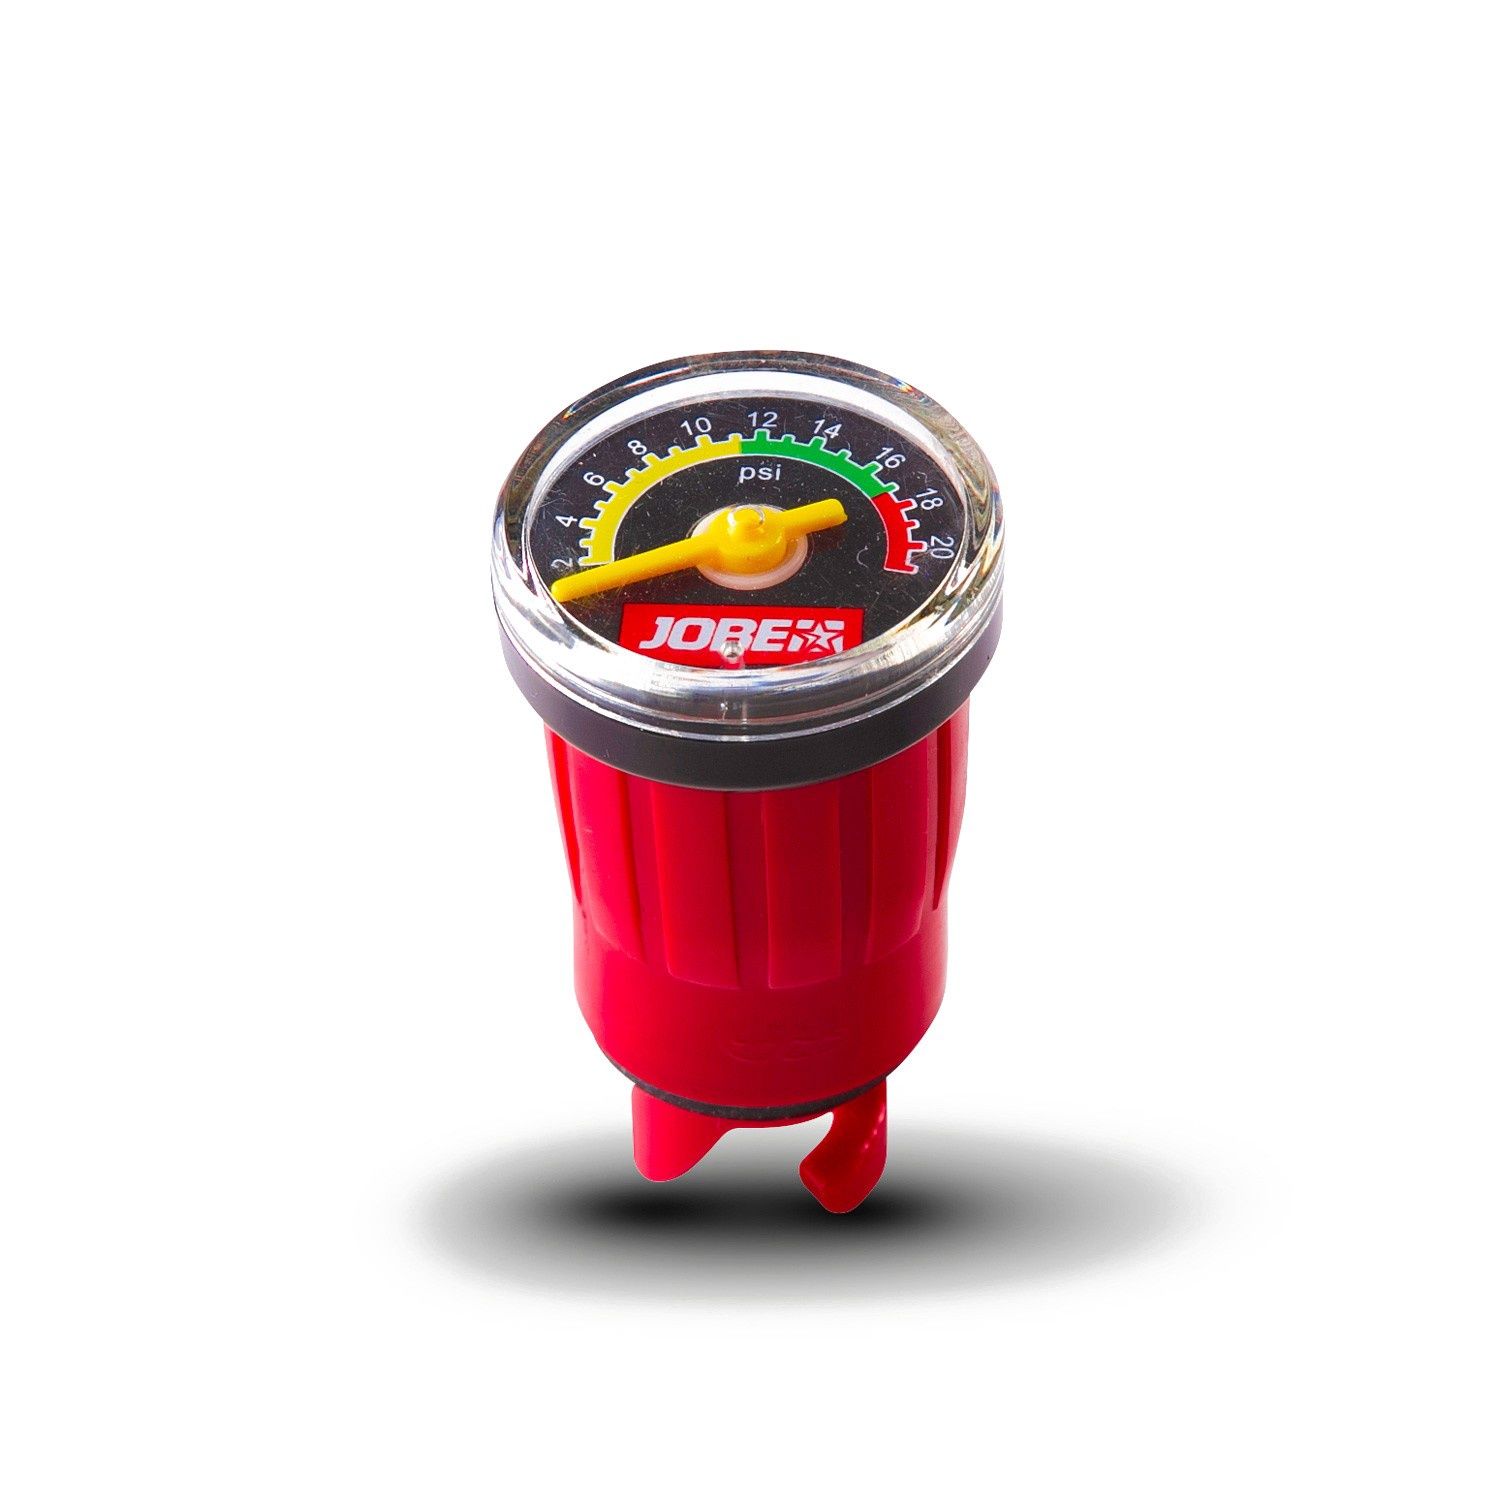 Jobe pressure meter, Colour: Red